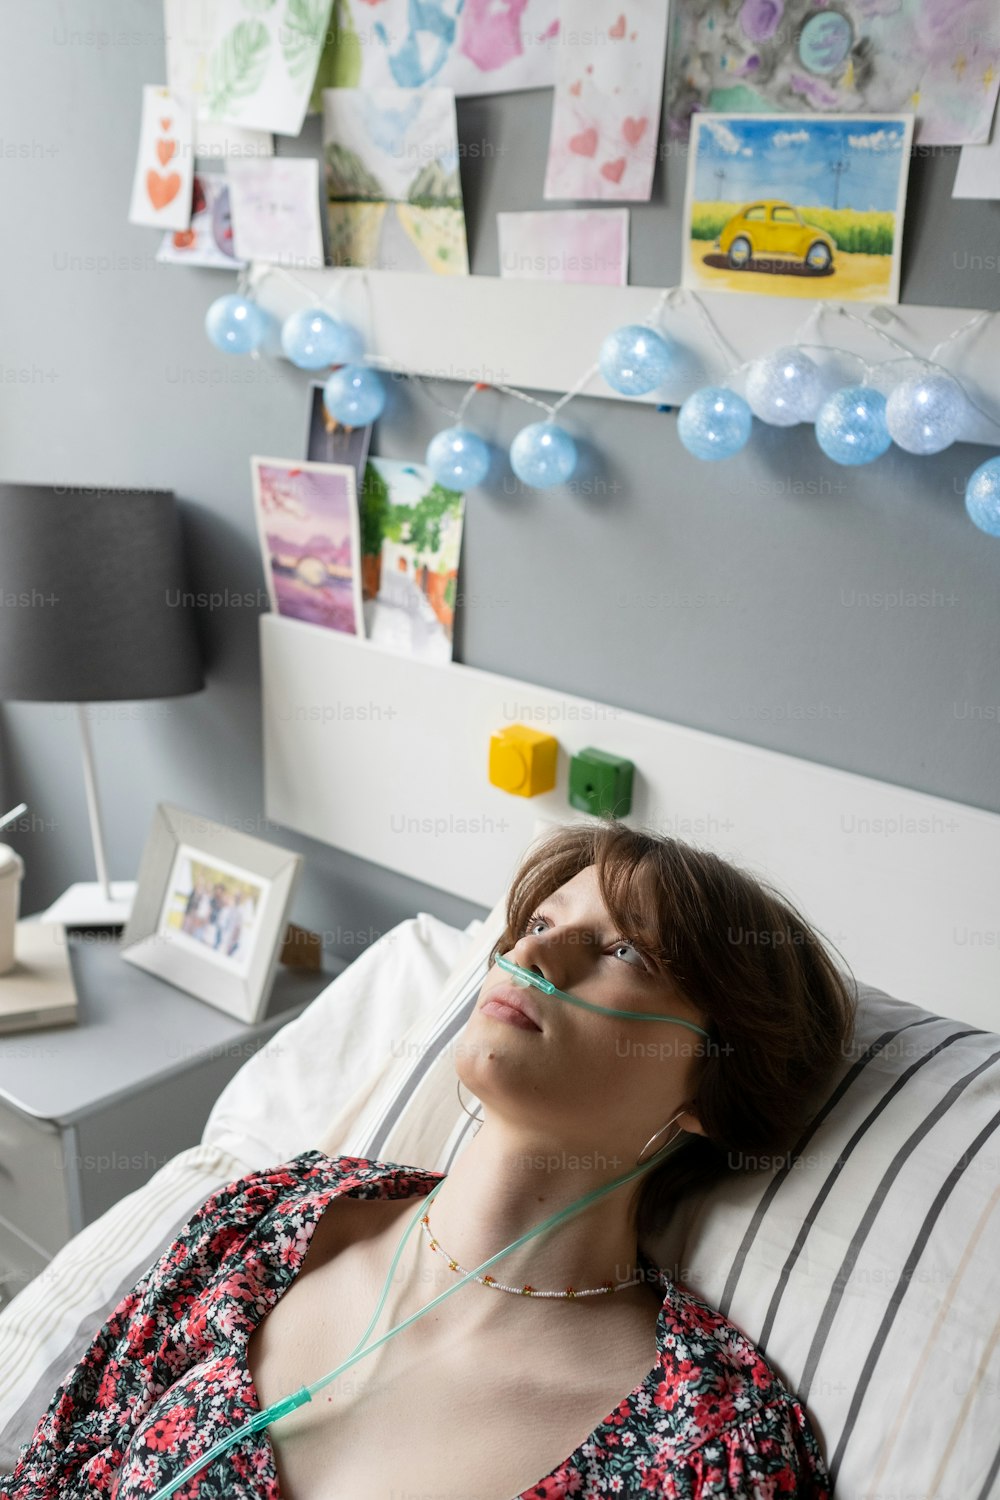 Ragazza adolescente riposante con tubo nasale dell'ossigeno che tiene la testa sul cuscino mentre si trova sul letto nel moderno reparto ospedaliero